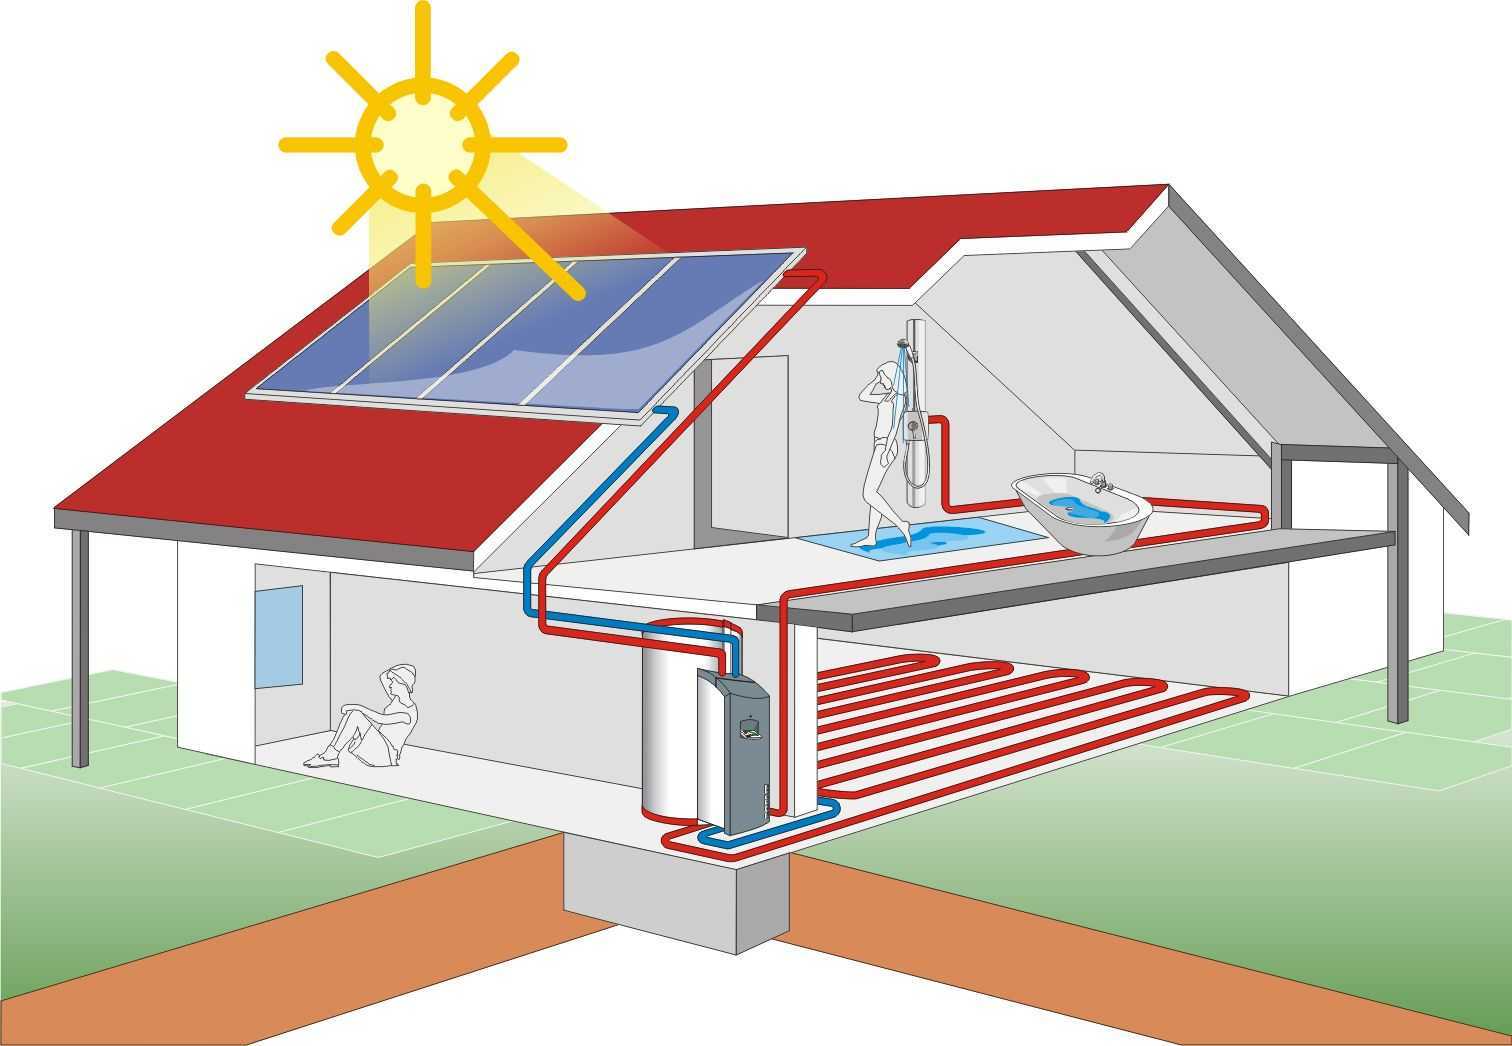 Энергосберегающие системы отопления частного дома: обзор технологий